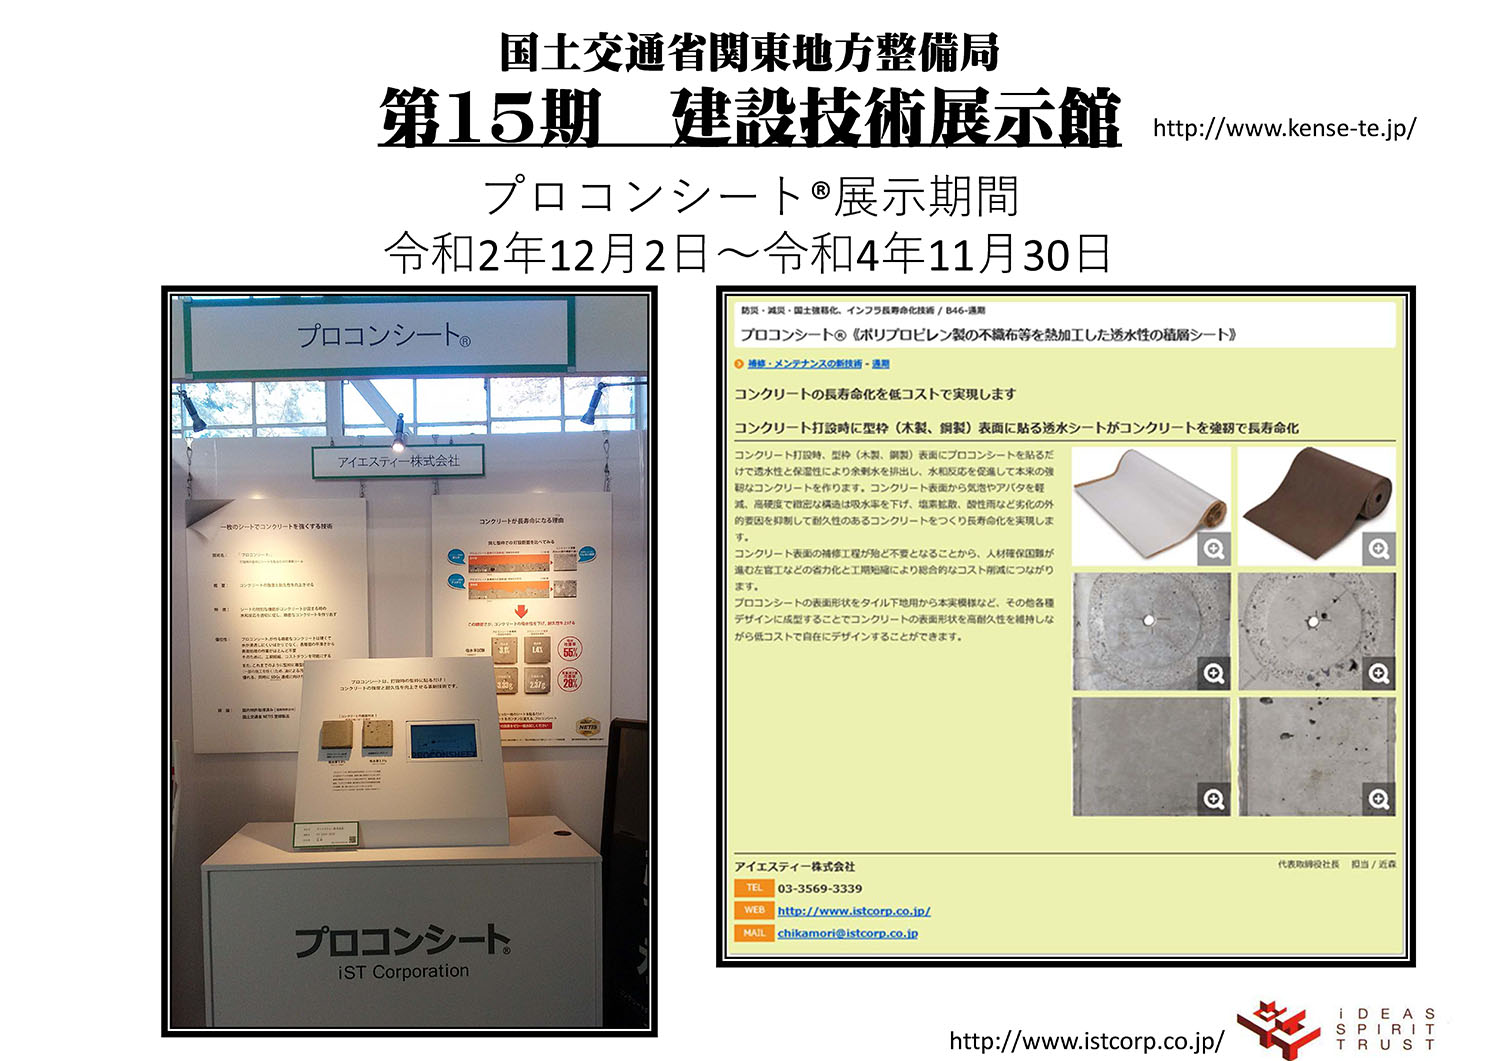 プロコンシートが国土交通省 関東地方整備局第１５期建設技術展示館に選出され展示されました